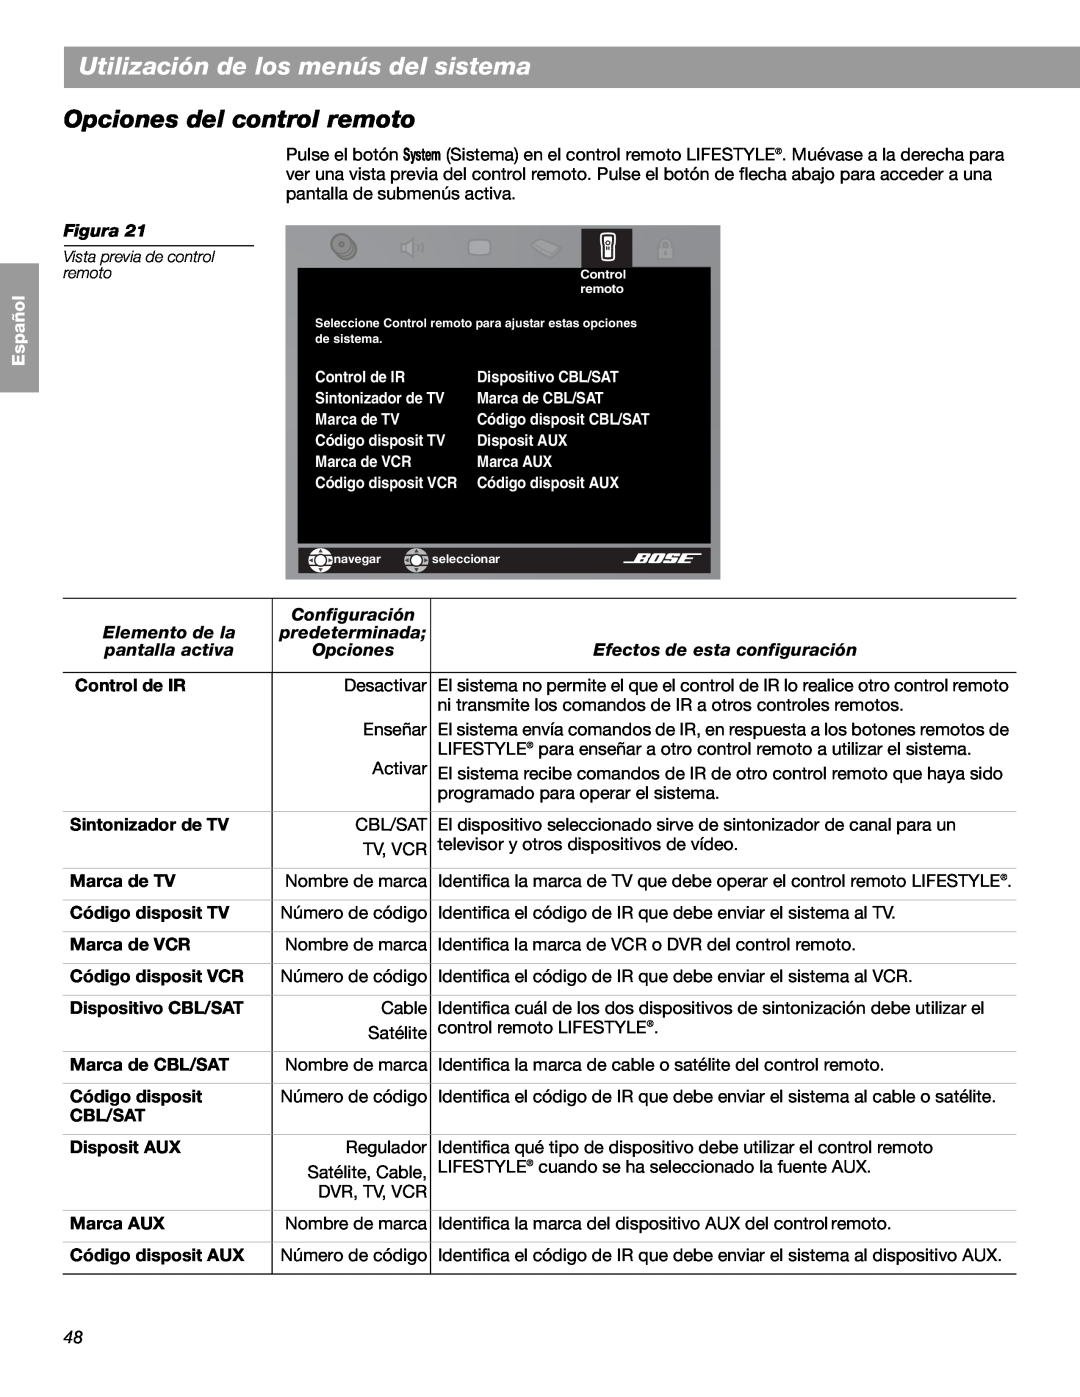 Bose LIFESTYLE 48 Opciones del control remoto, Utilización de los menús del sistema, English Español Français, Figura 